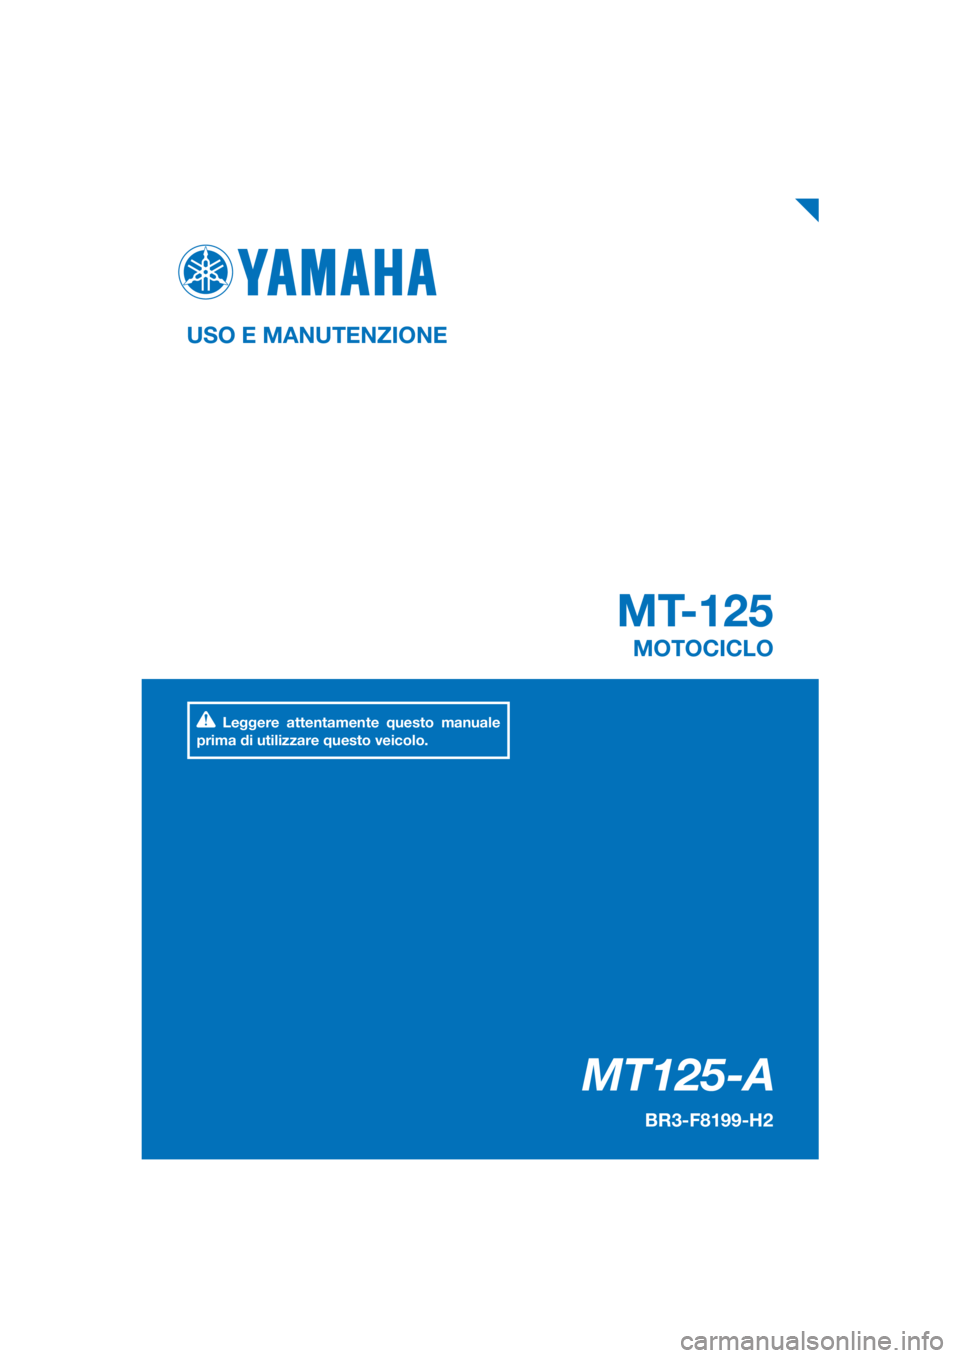 YAMAHA MT-125 2017  Manuale duso (in Italian) PANTONE285C
MT125-A
MT-125
USO E MANUTENZIONE
BR3-F8199-H2
MOTOCICLO
Leggere attentamente questo manuale 
prima di utilizzare questo veicolo.
[Italian  (H)] 